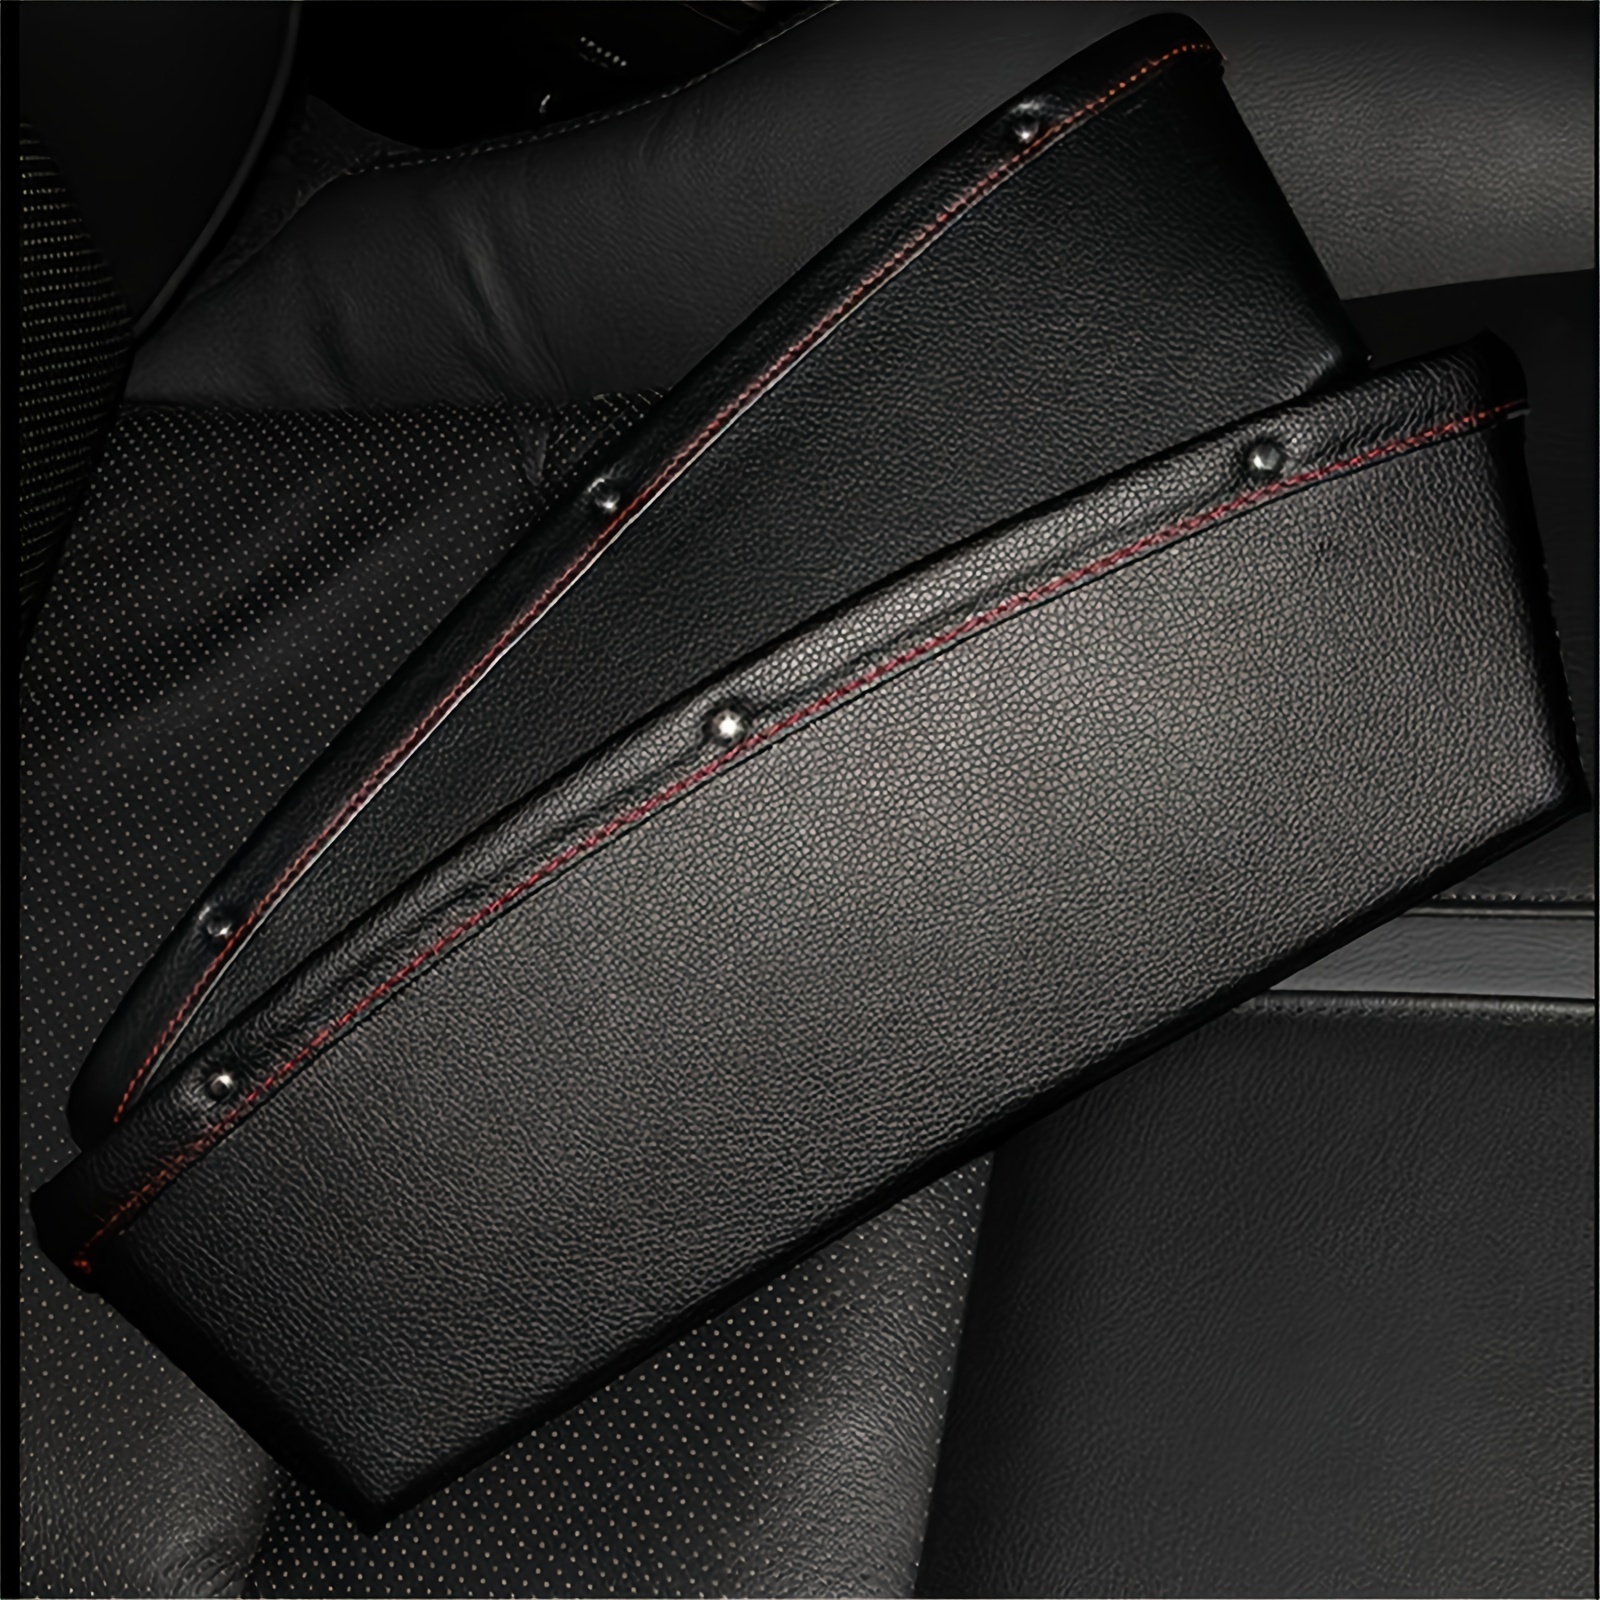 Kaufe 1 Stück Leder Autositz Gap Manager Multifunktionale Autokonsole Seite  Aufbewahrungsbox